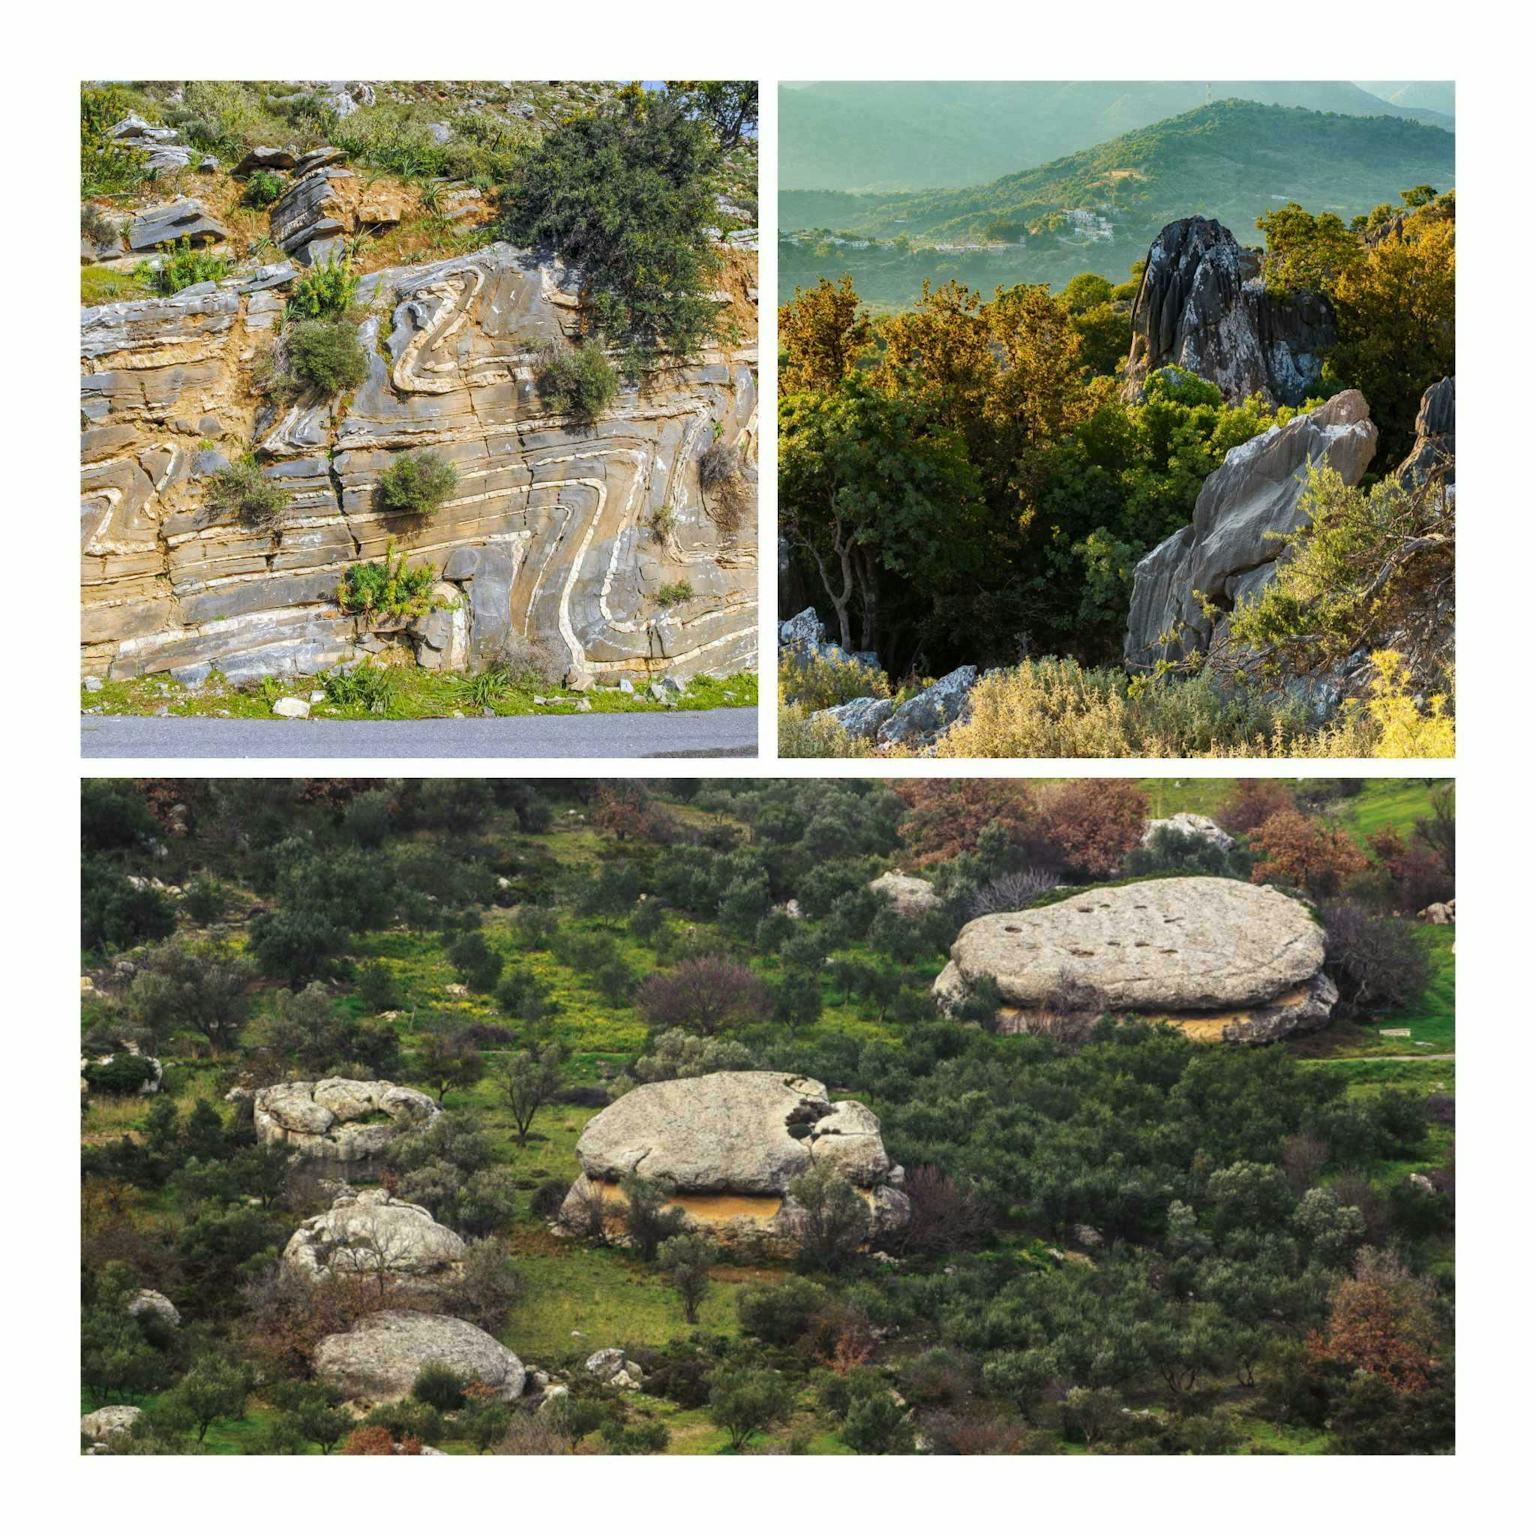 Γνωρίστε τη γεωλογική ιστορία της Κρήτης μέσα από 3 γεωτόπους του Γεωπάρκου Ψηλορείτη!